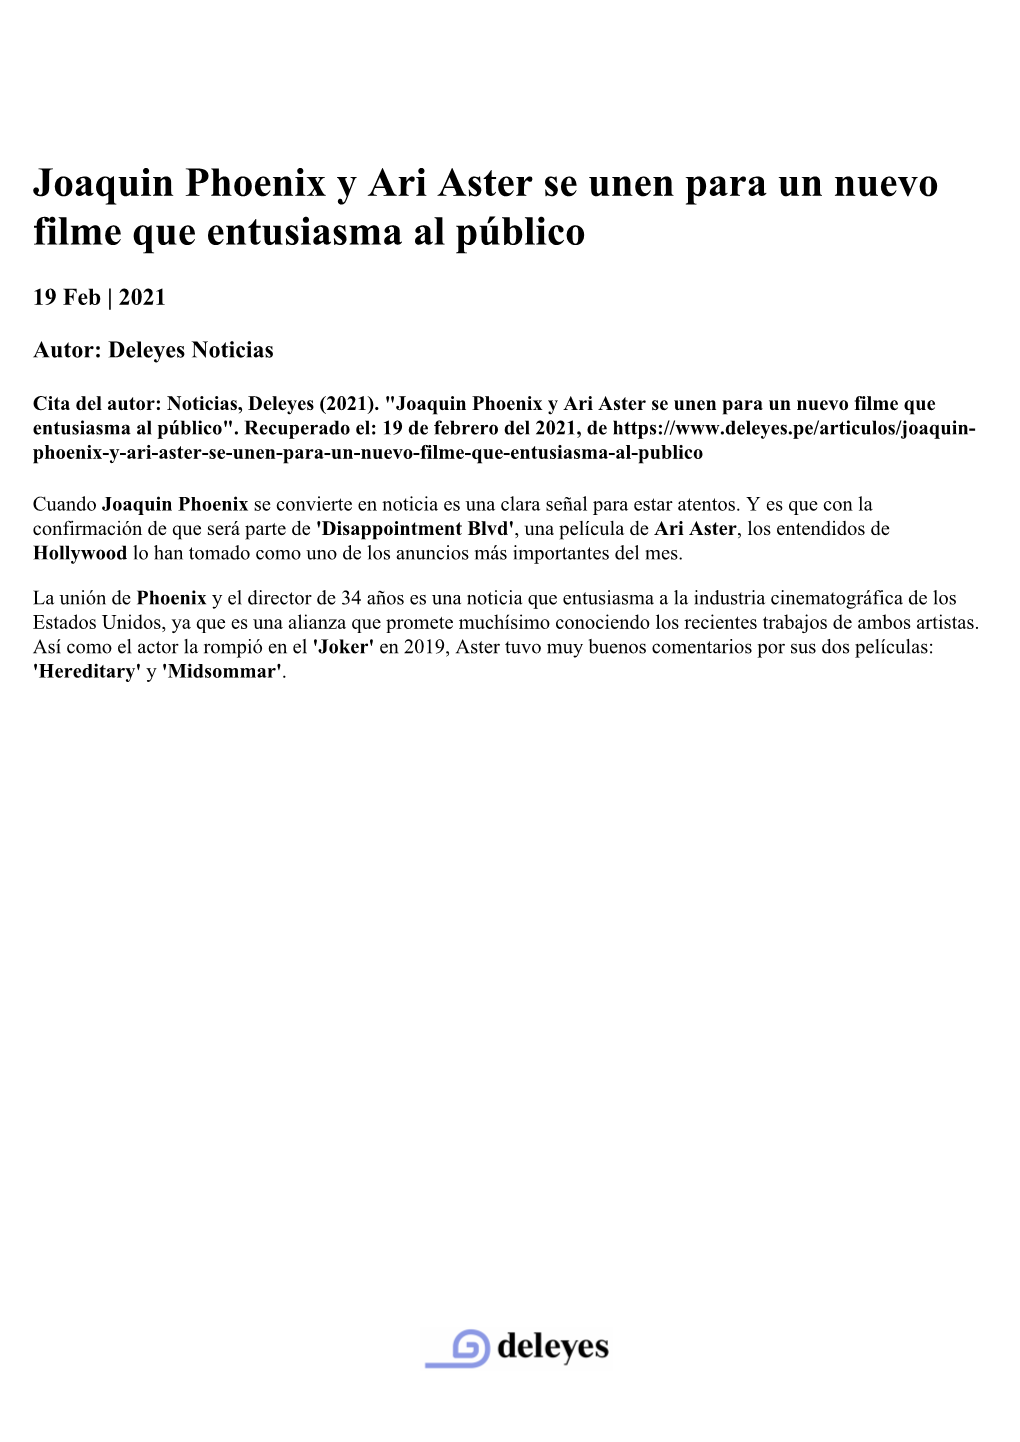 Joaquin Phoenix Y Ari Aster Se Unen Para Un Nuevo Filme Que Entusiasma Al Público